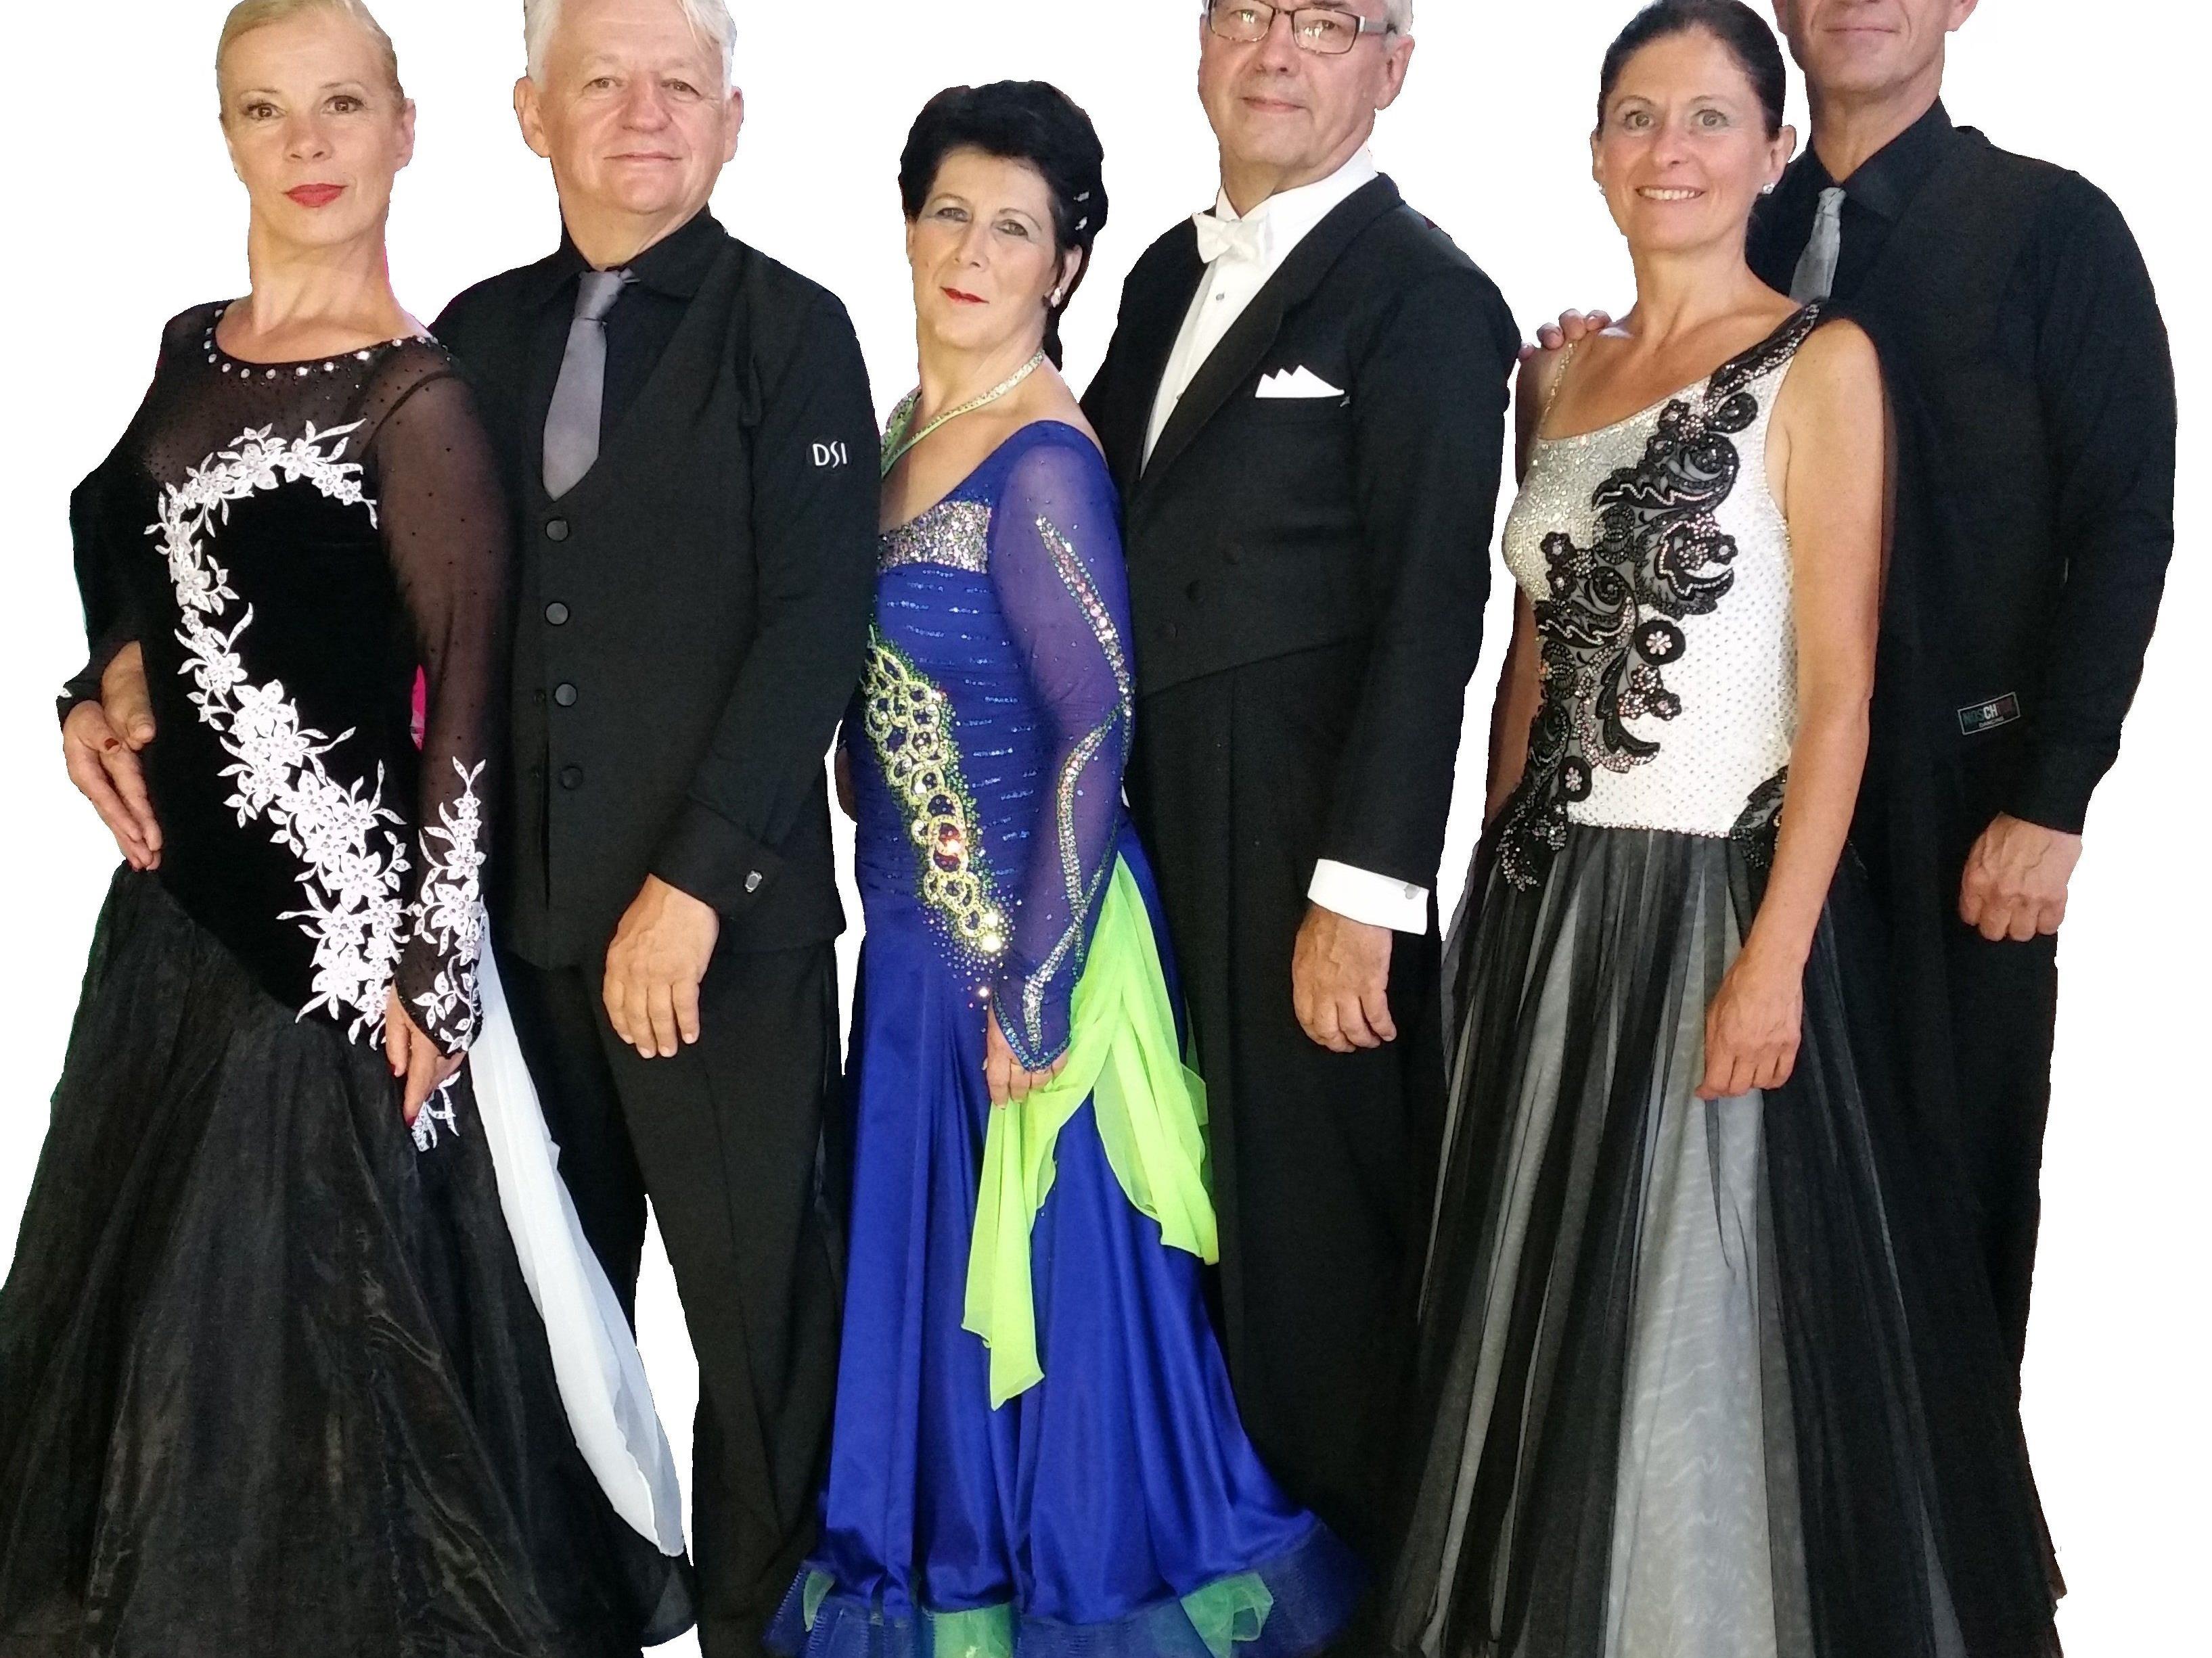 Mannschaftsbild mit Elisabeth und Stefan Szalay, Bianca und Lothar Schuler, Birgit und Manfred Trefalt (v.l.n.r.)